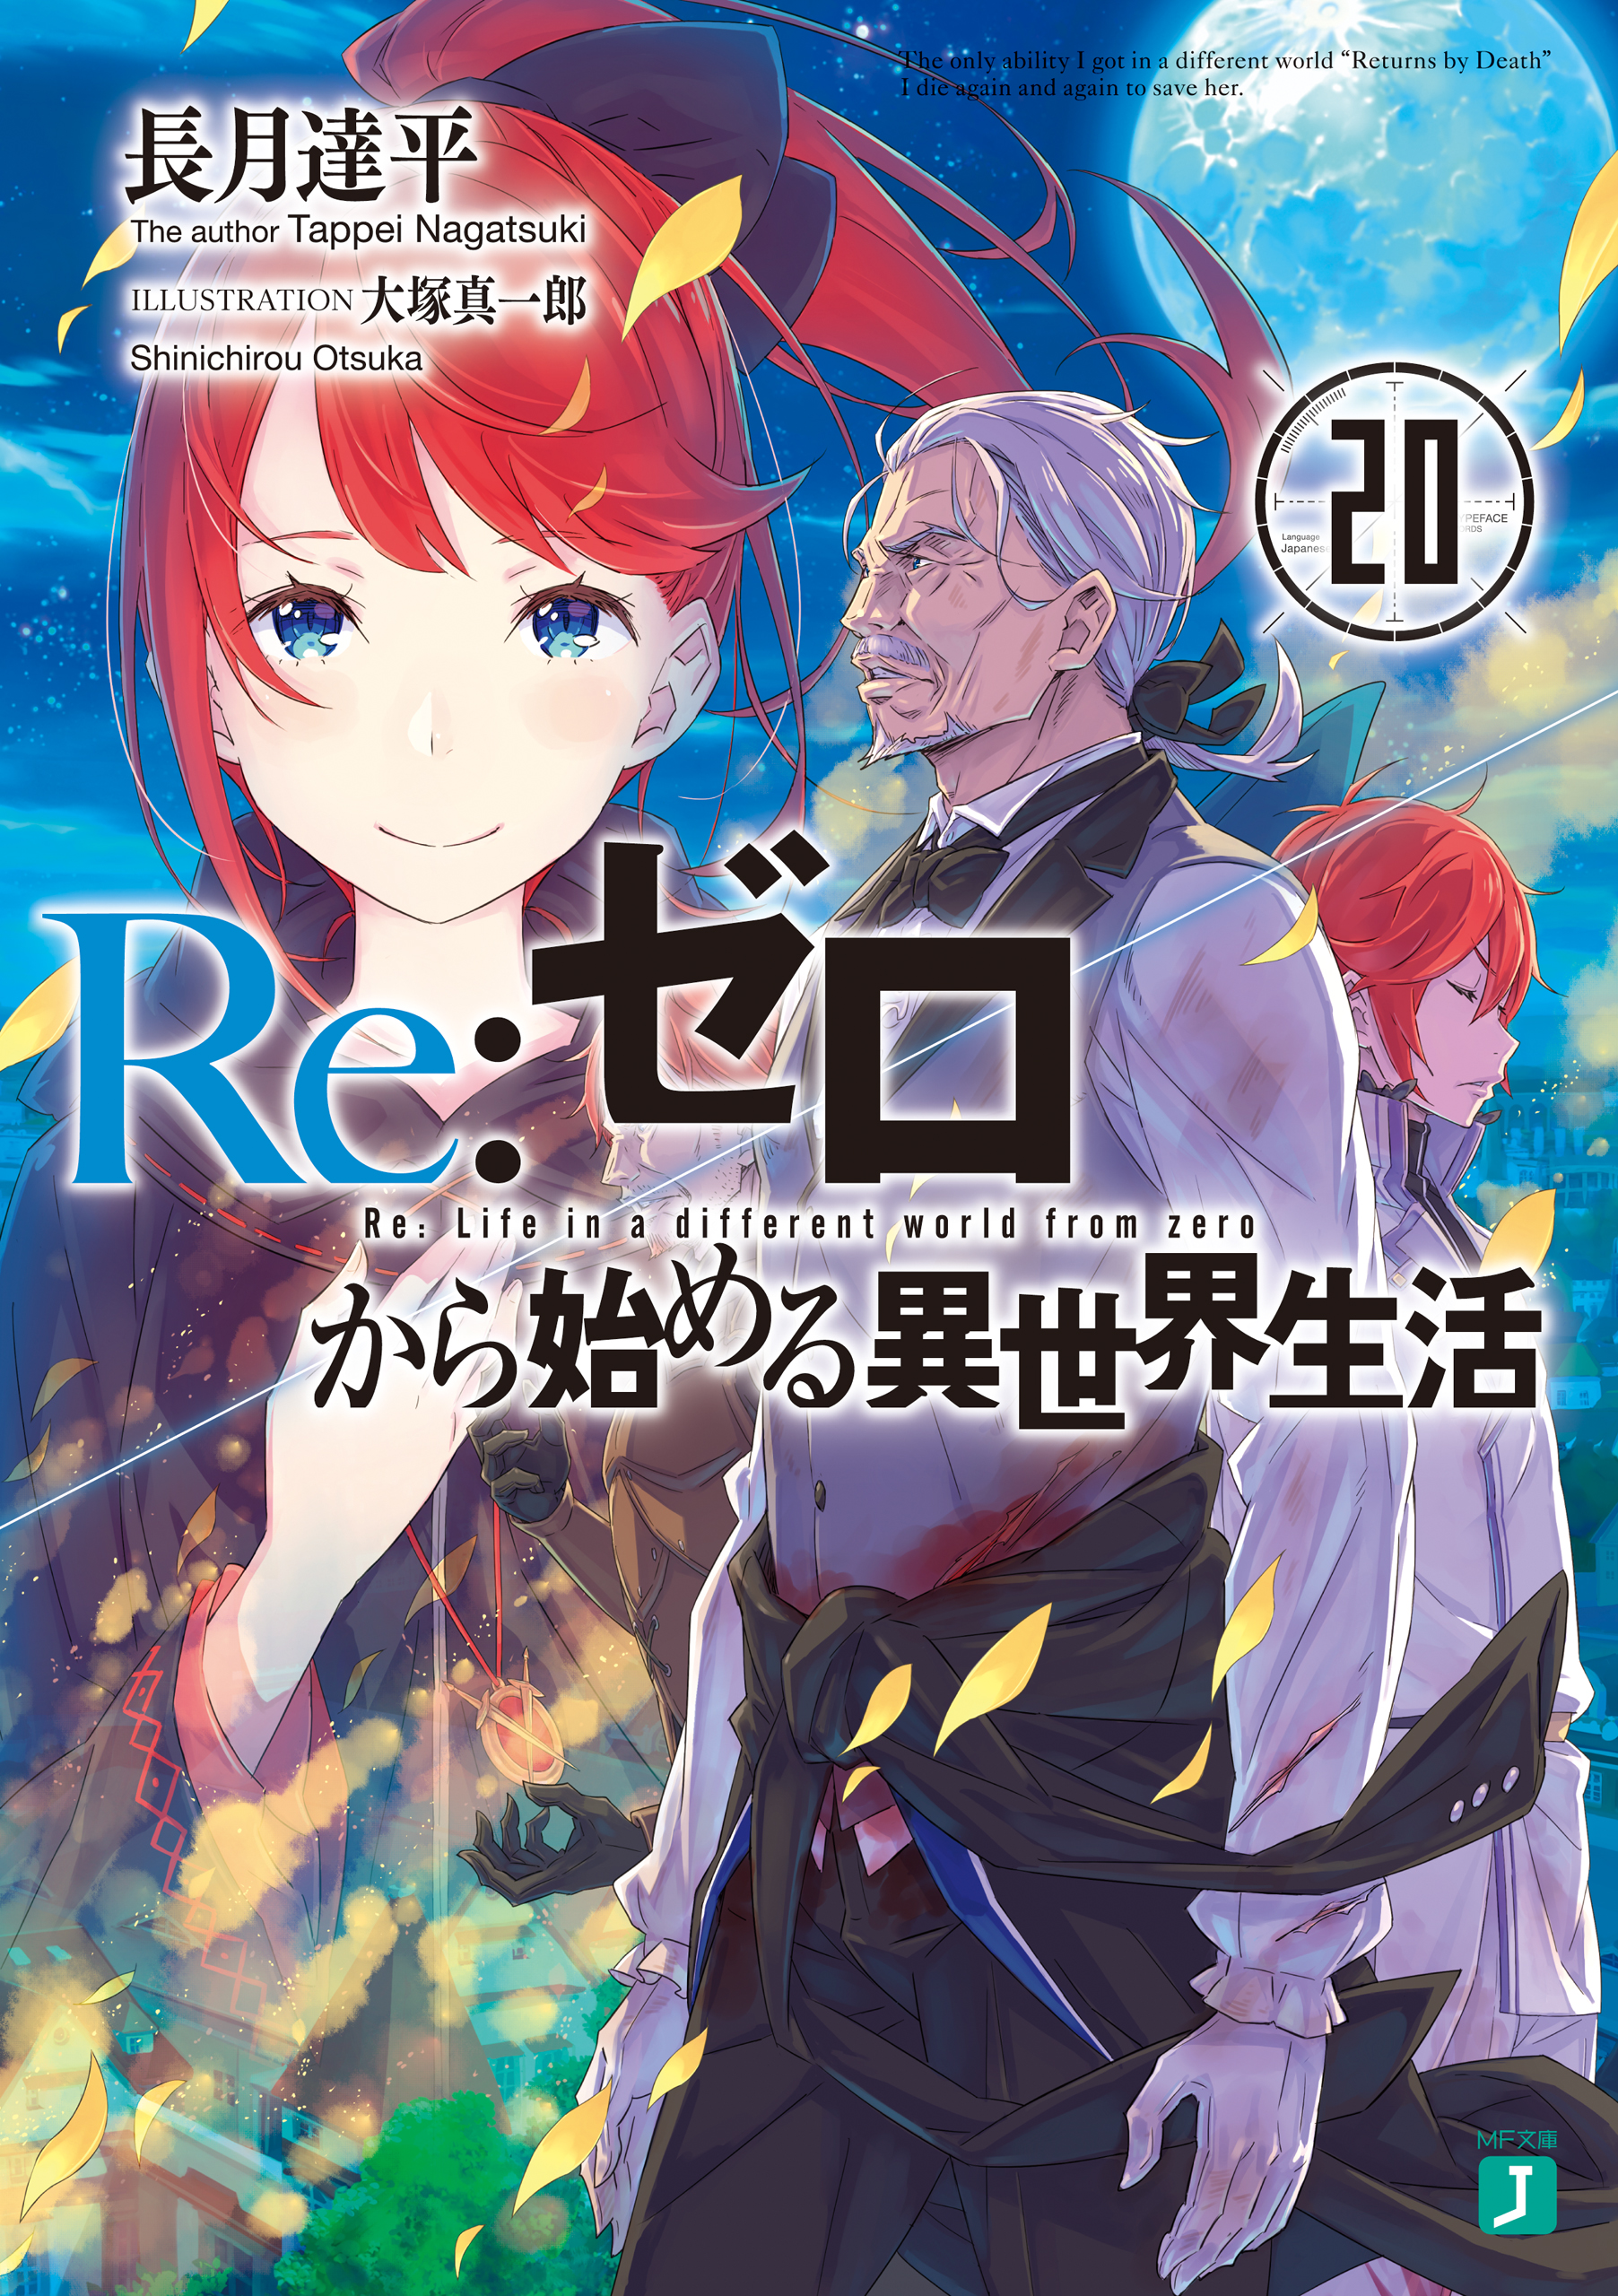 Re:Zero Light Novel Volume 20, Re:Zero Wiki, Fandom